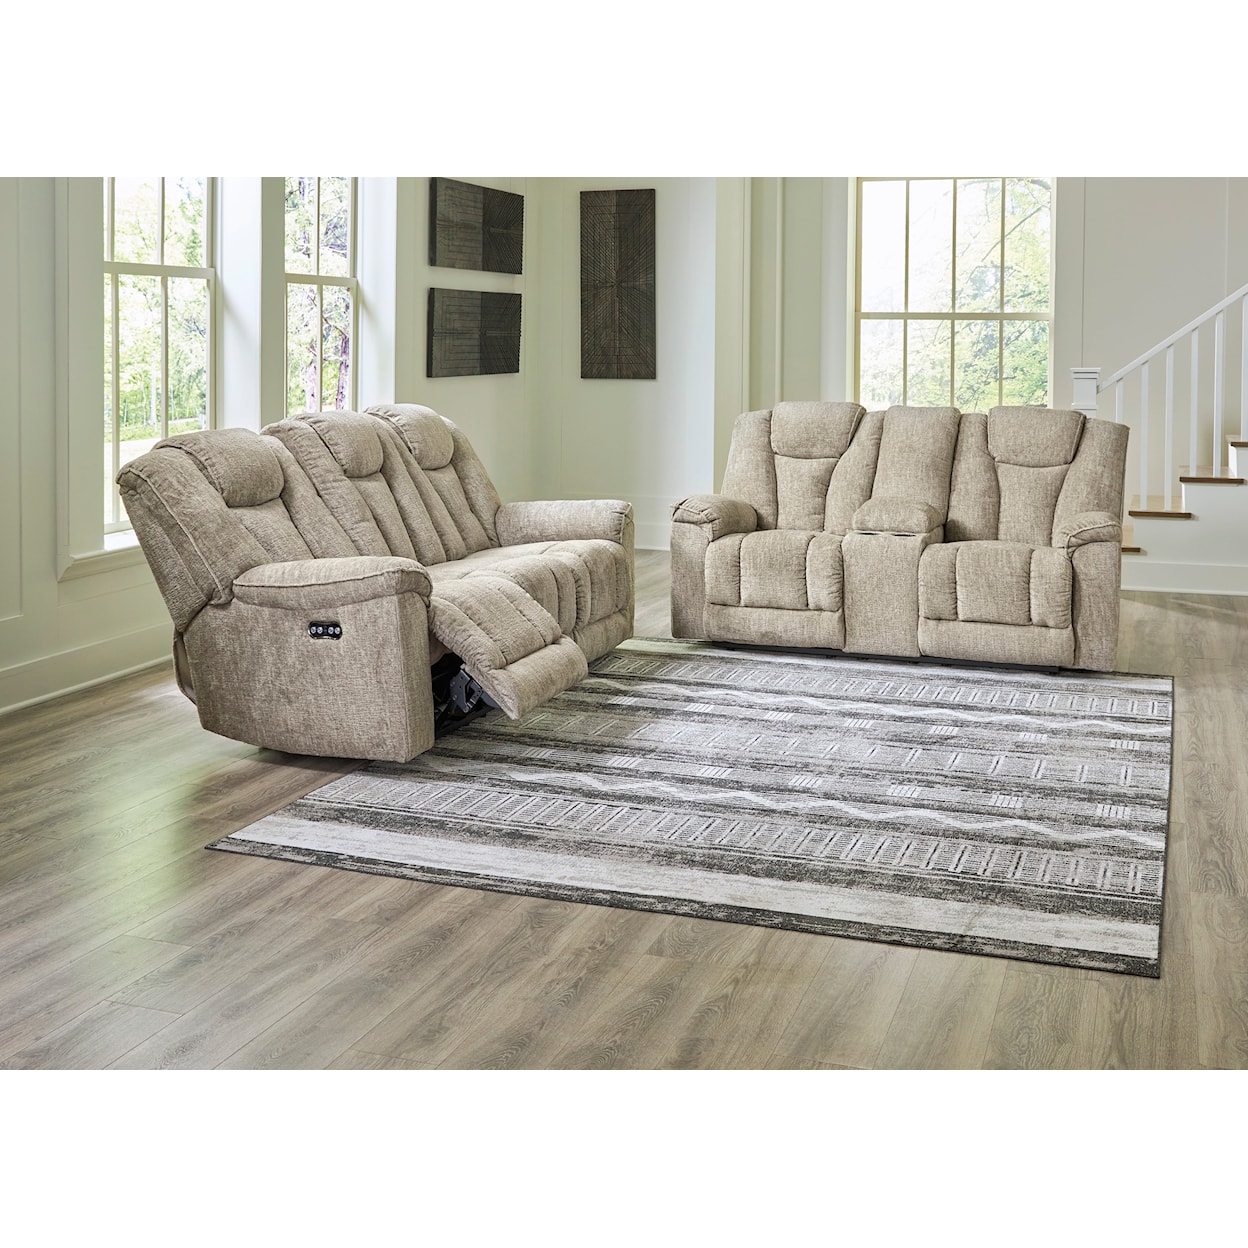 StyleLine Hindmarsh Living Room Set